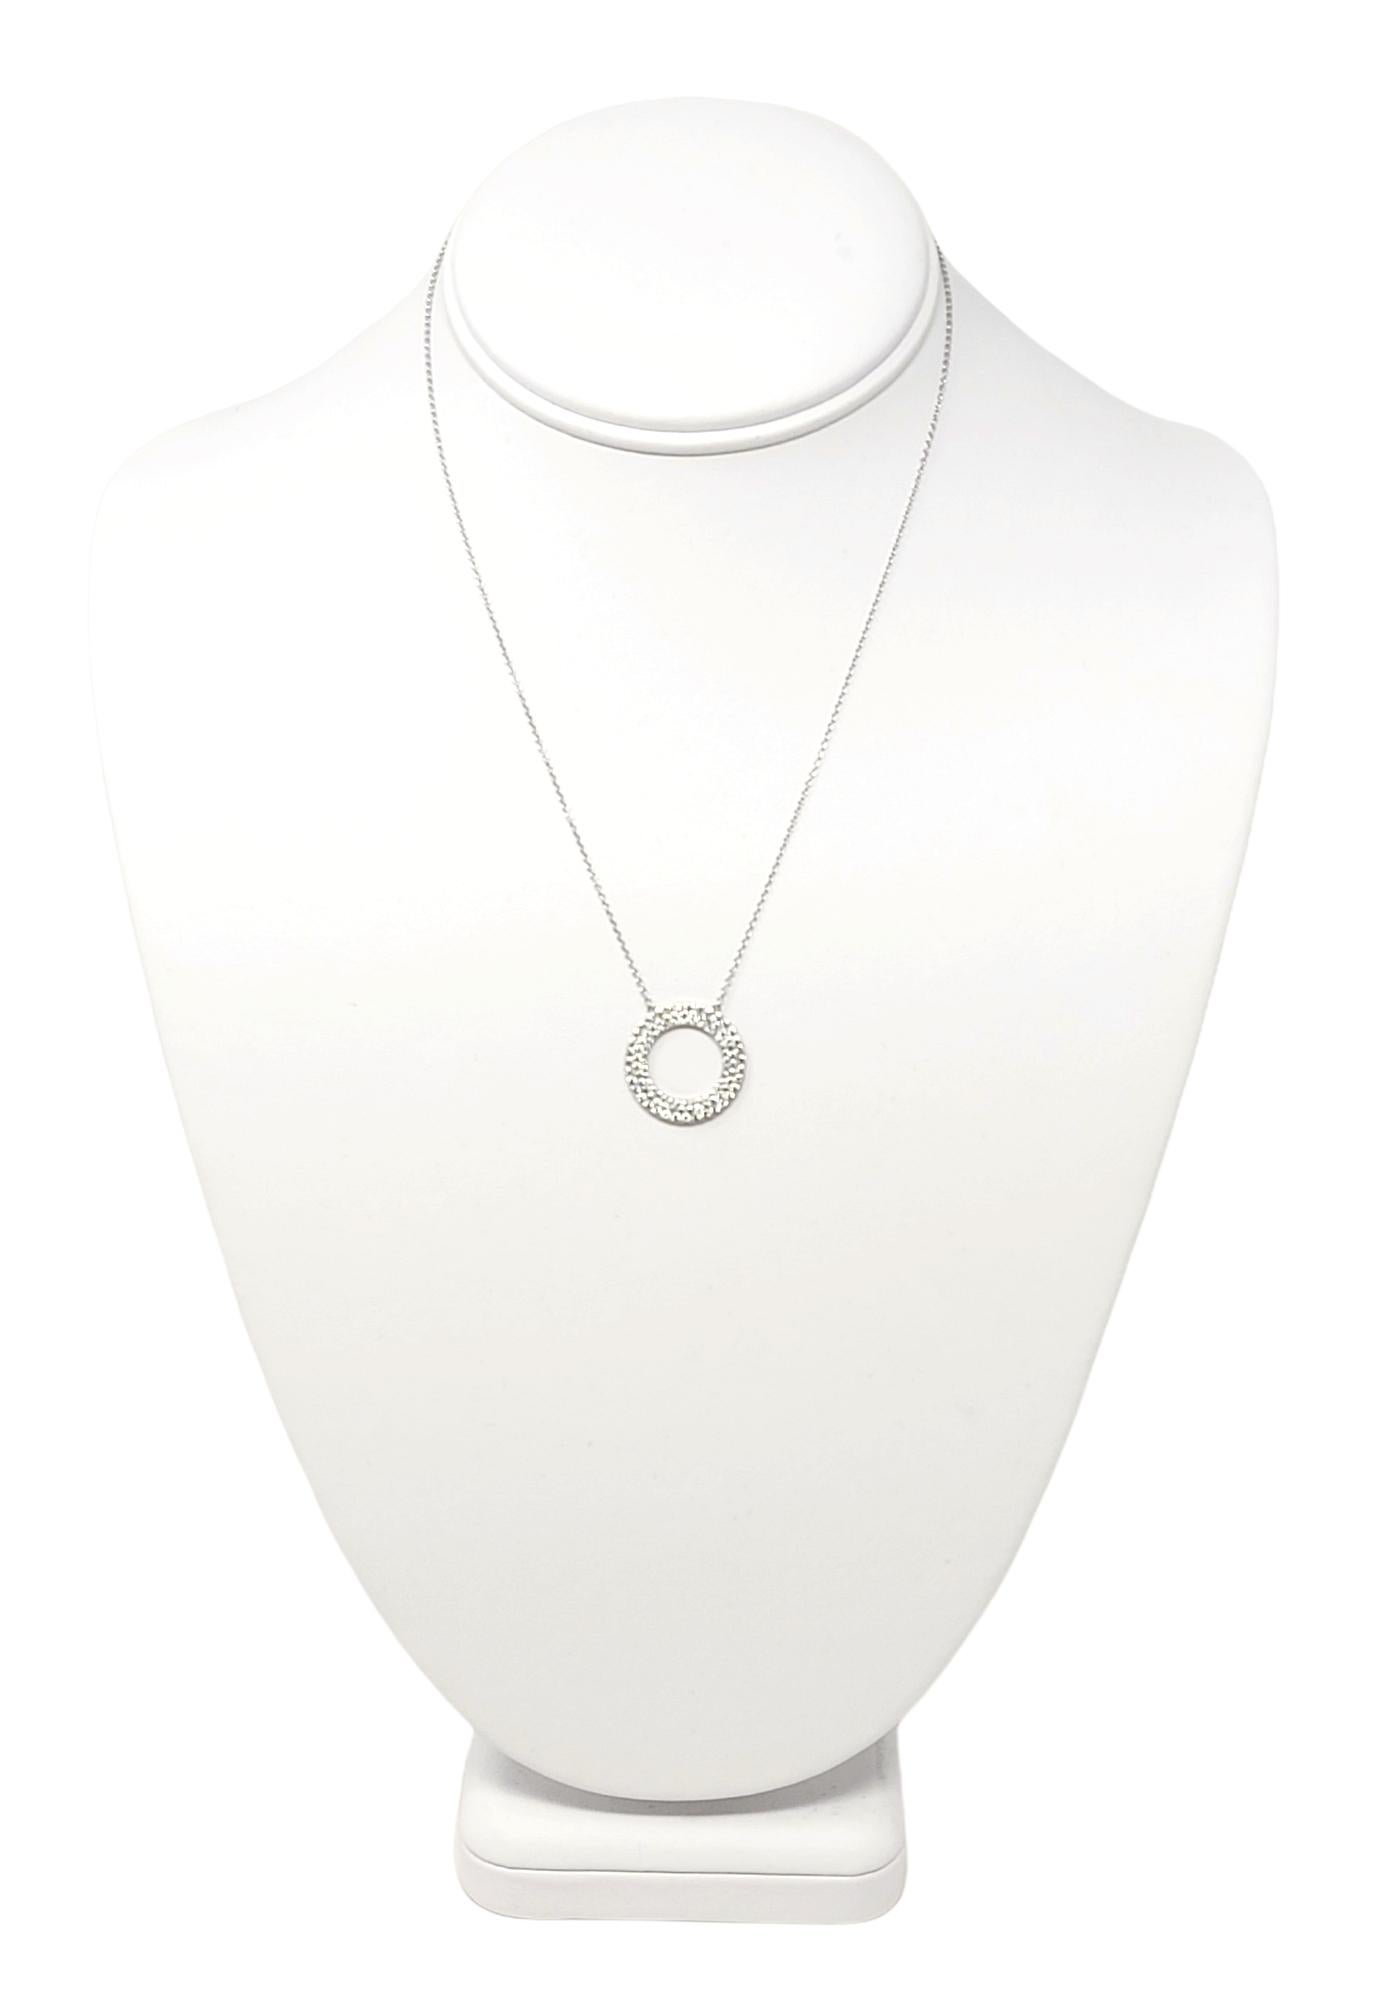 Round Cut Tiffany & Co Metro Three Row Diamond Circle Pendant Necklace 18 Karat White Gold